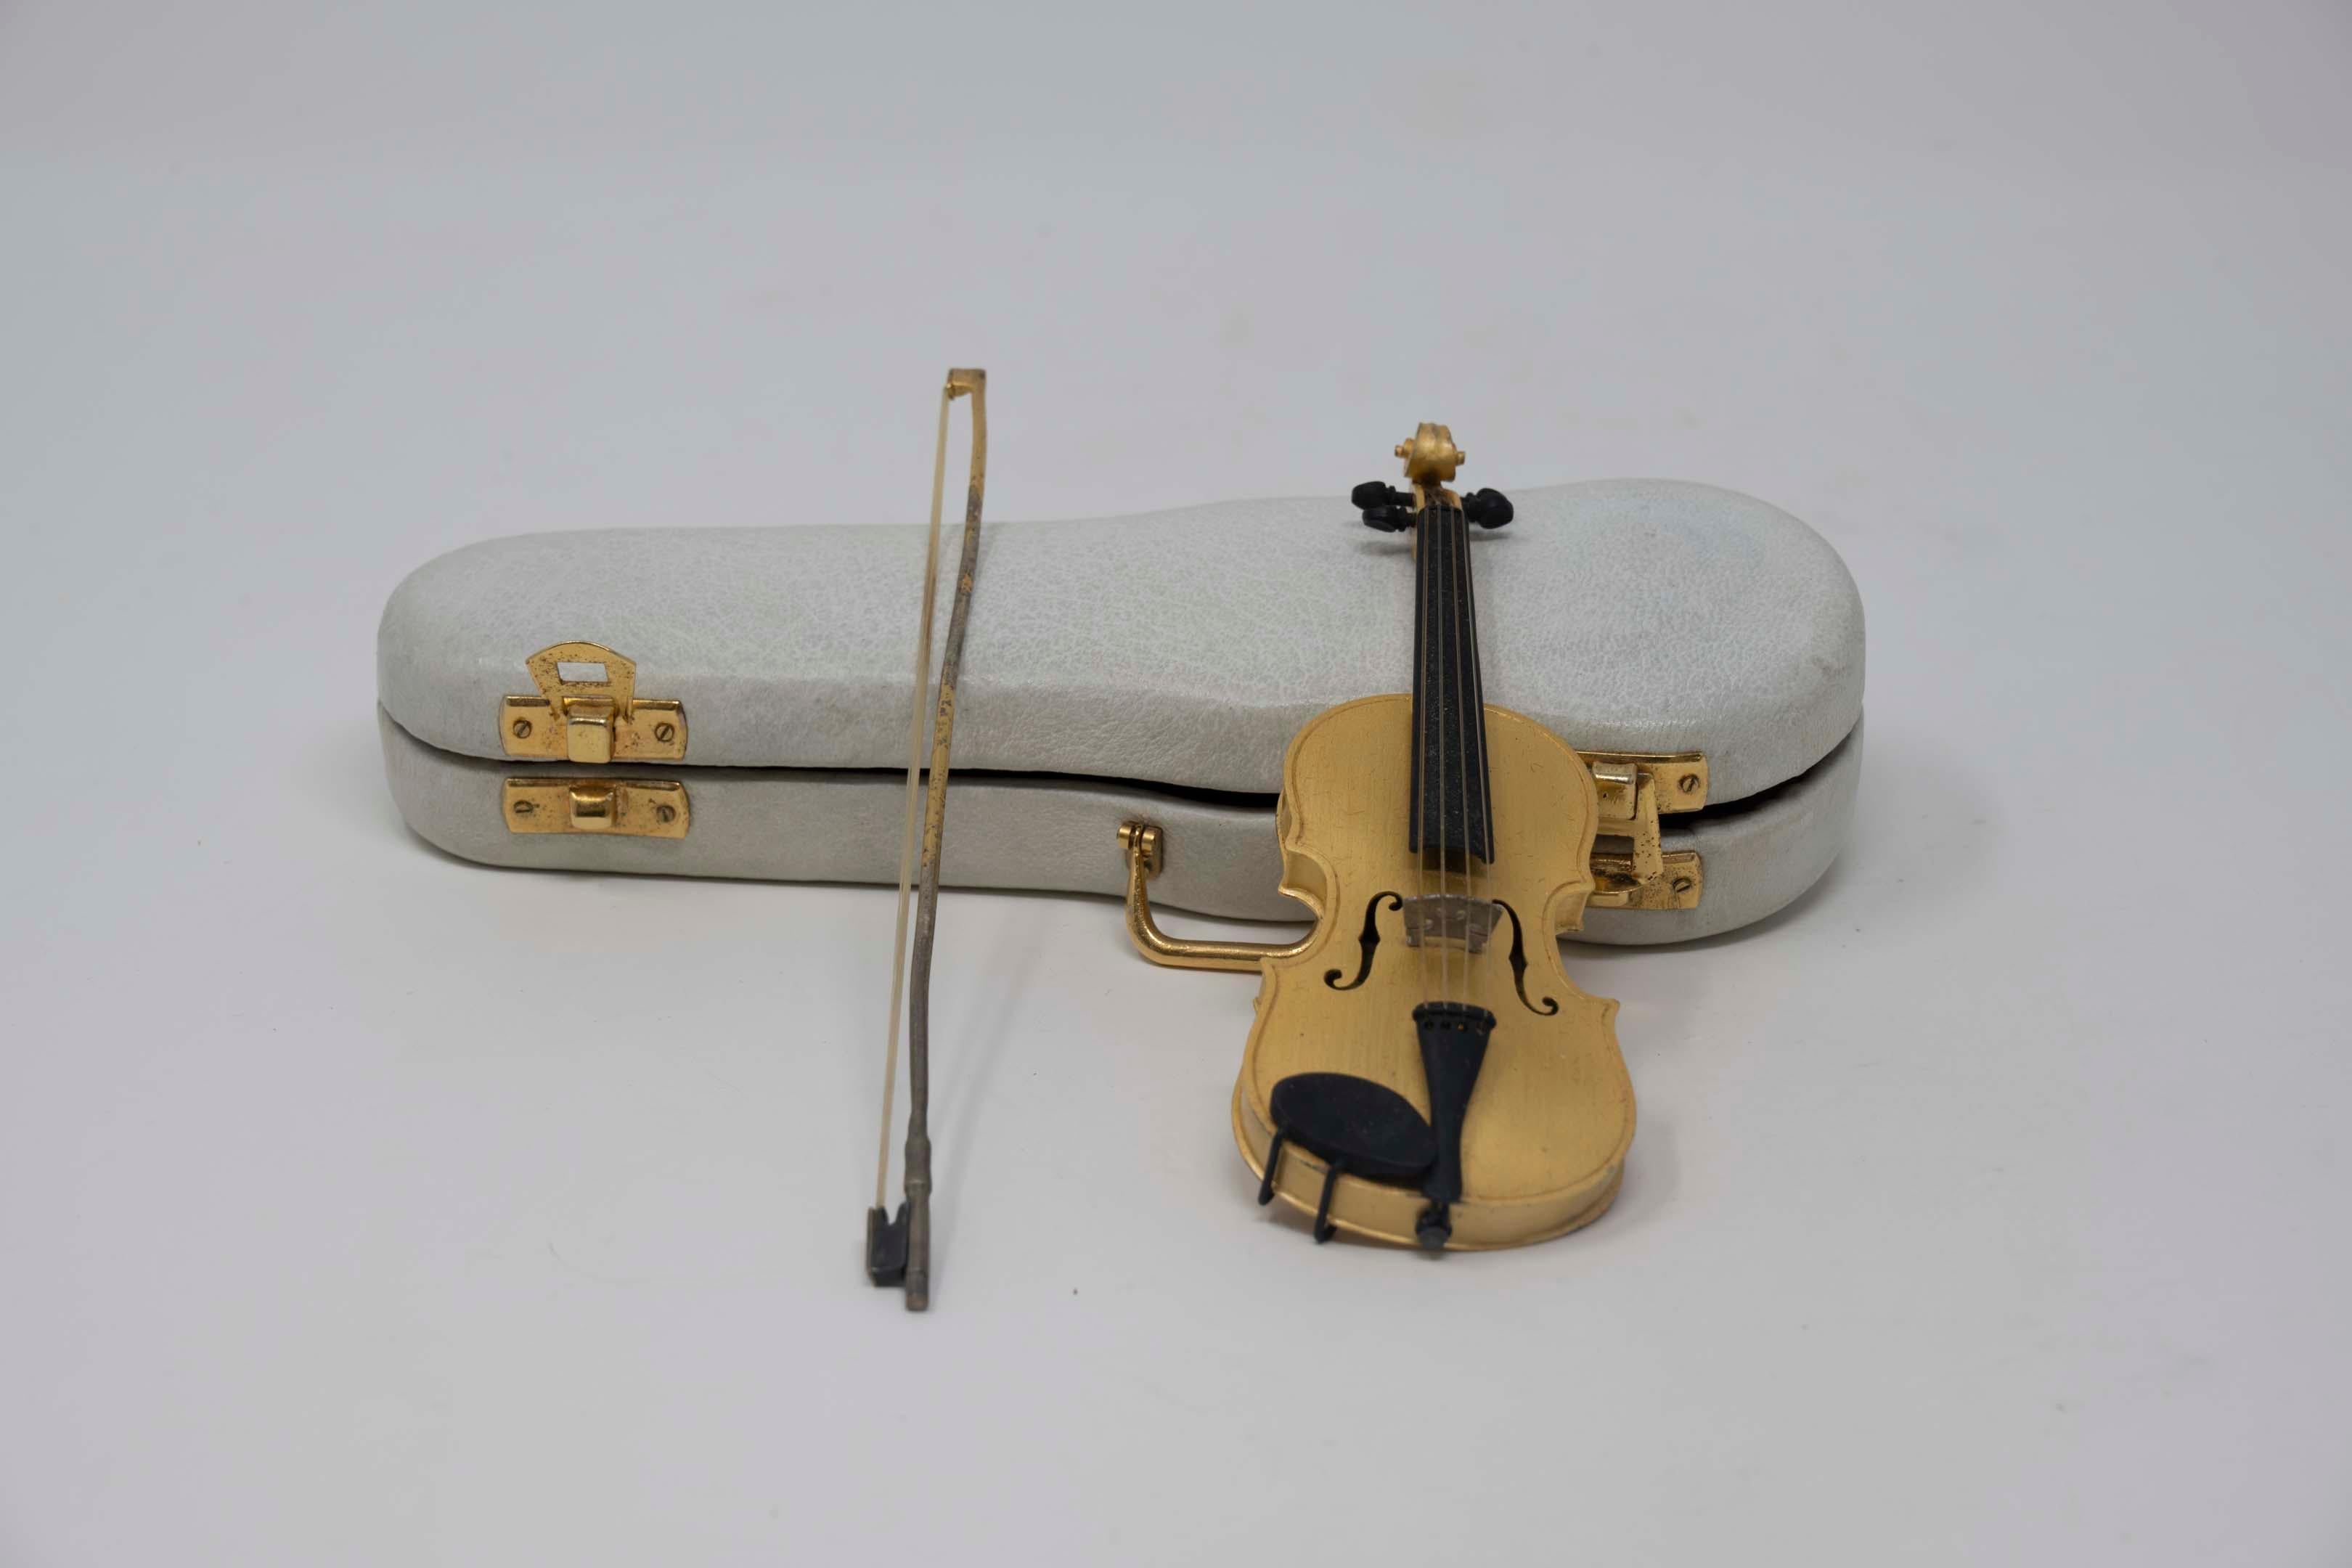 Vieux violon miniature en argent sterling doré avec étui et archet originaux, fabriqué par Cira. Mesure 12cm de long, étui 17cm de long. Estampillé Cira 925, bon état.
